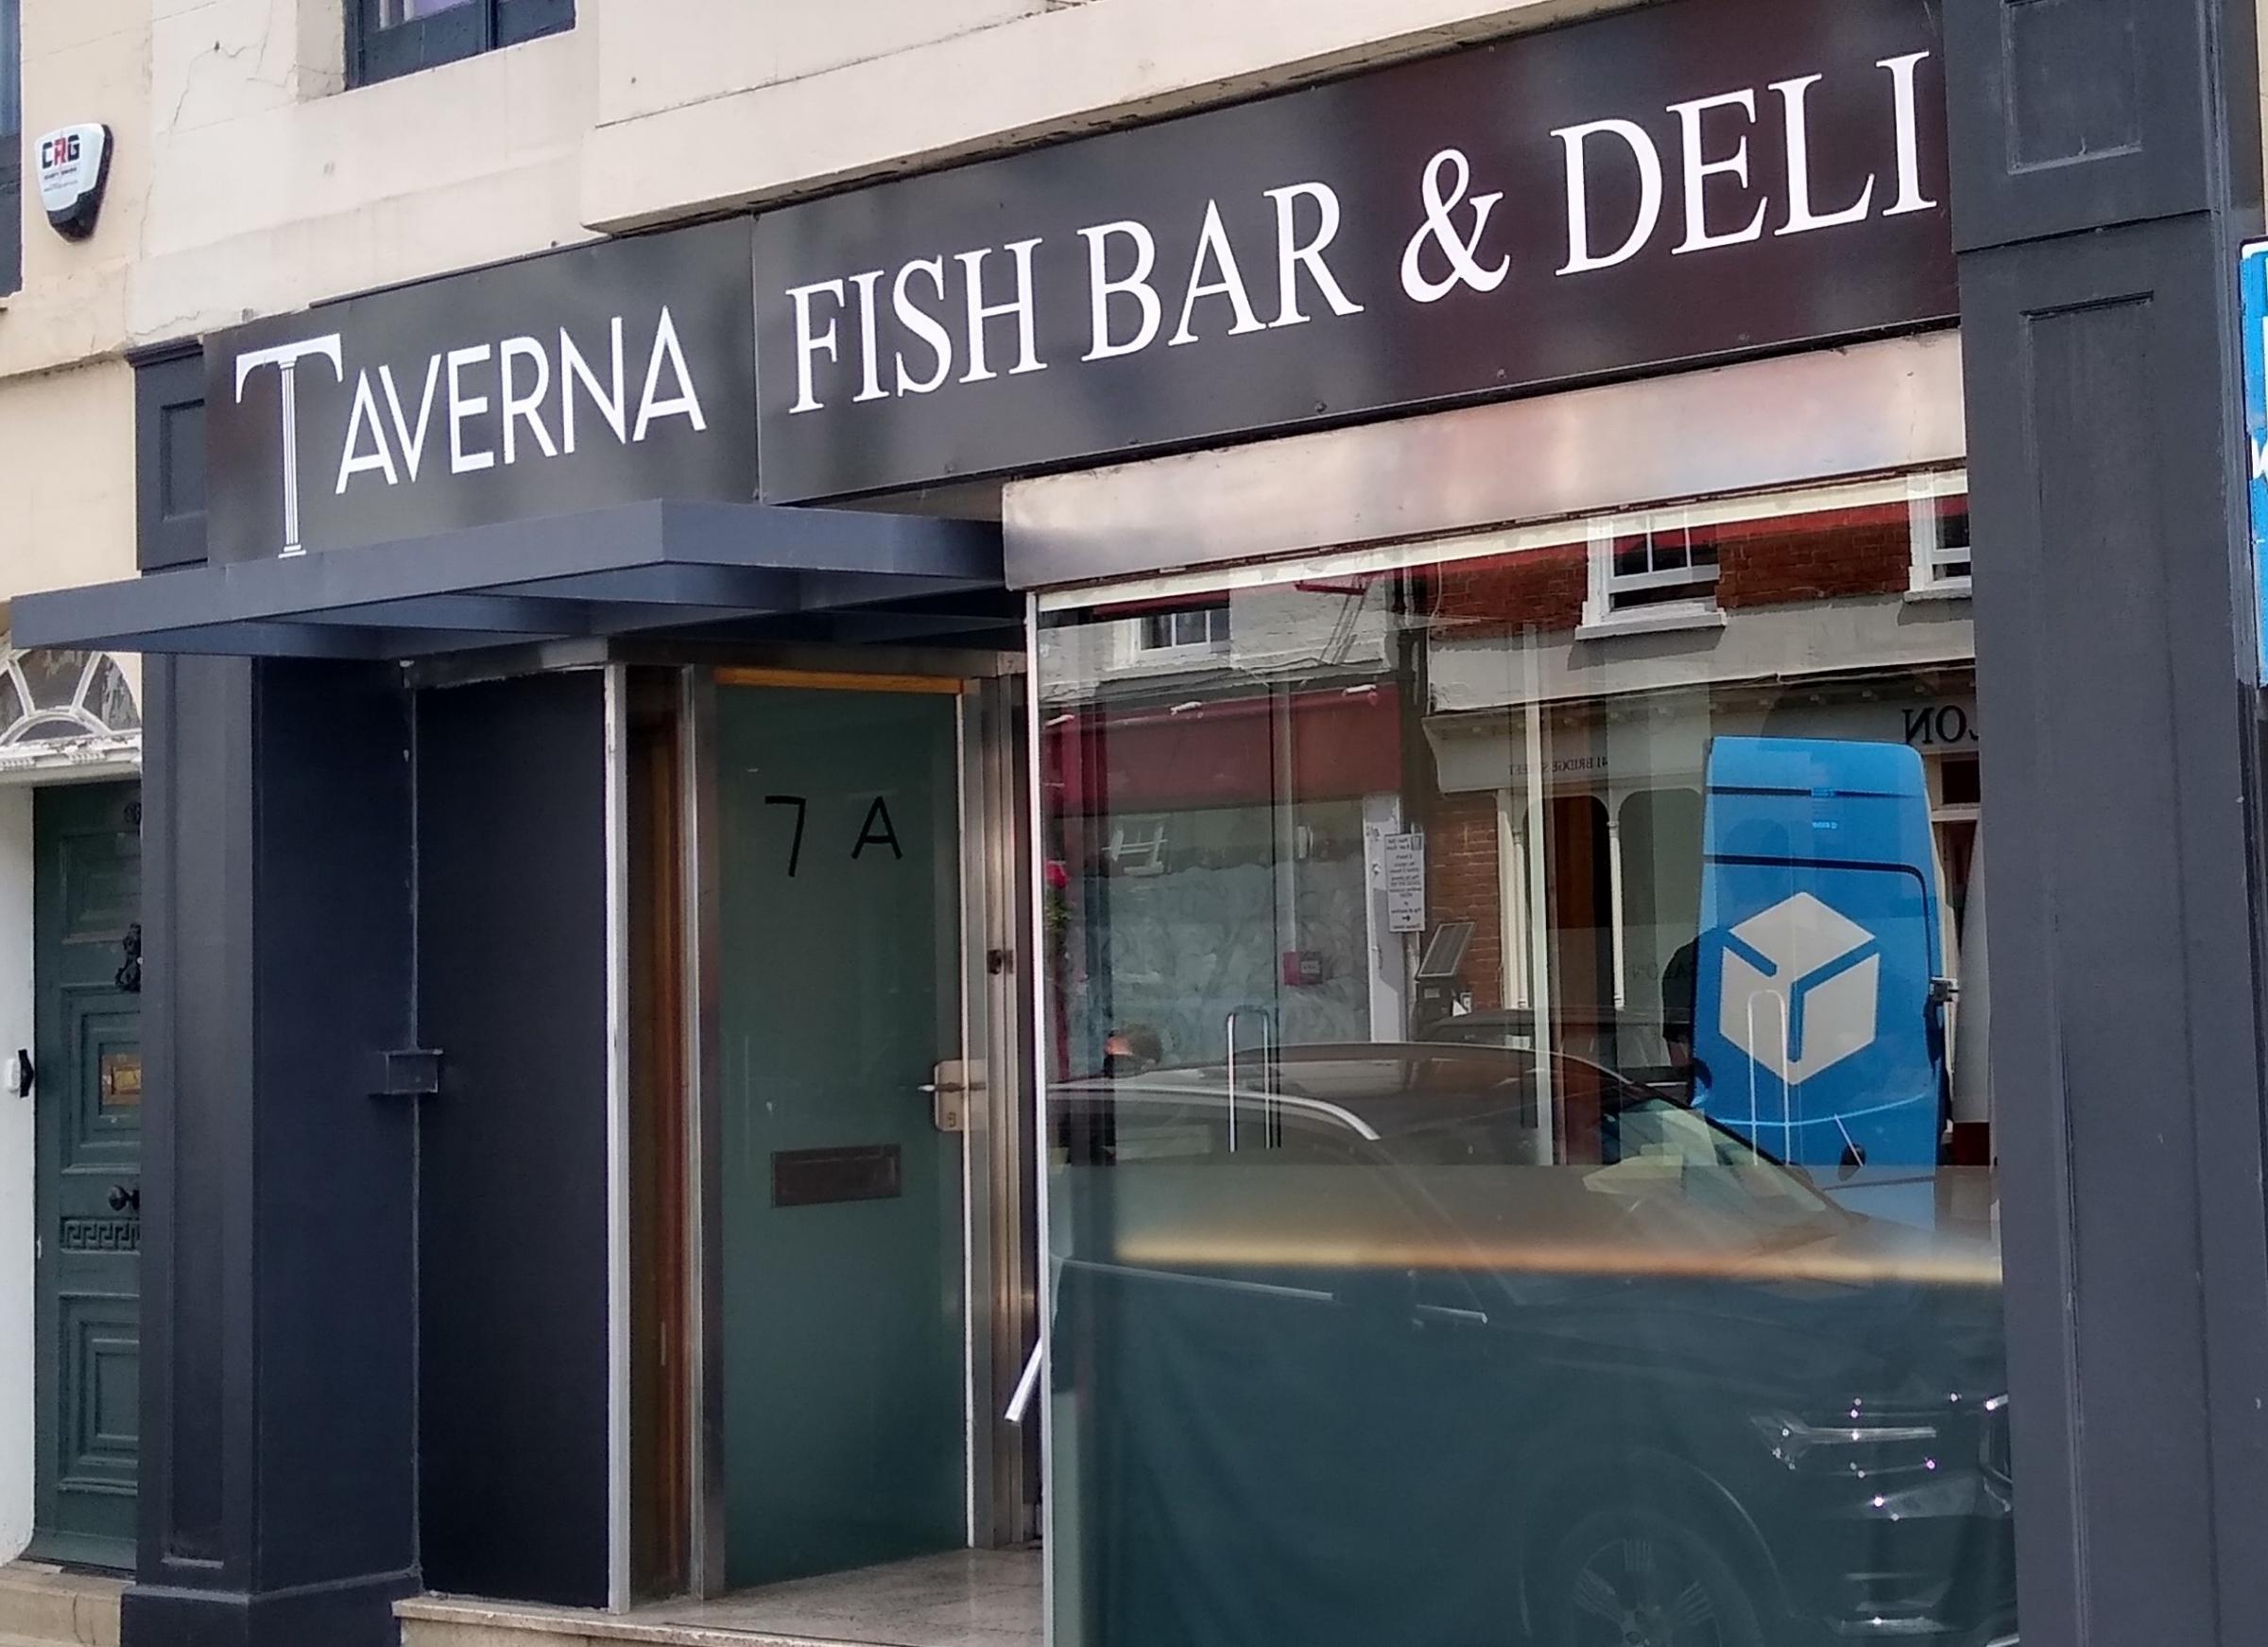 The Taverna Fish Bar and Deli in Bridge Street. Picture: Michael Eden